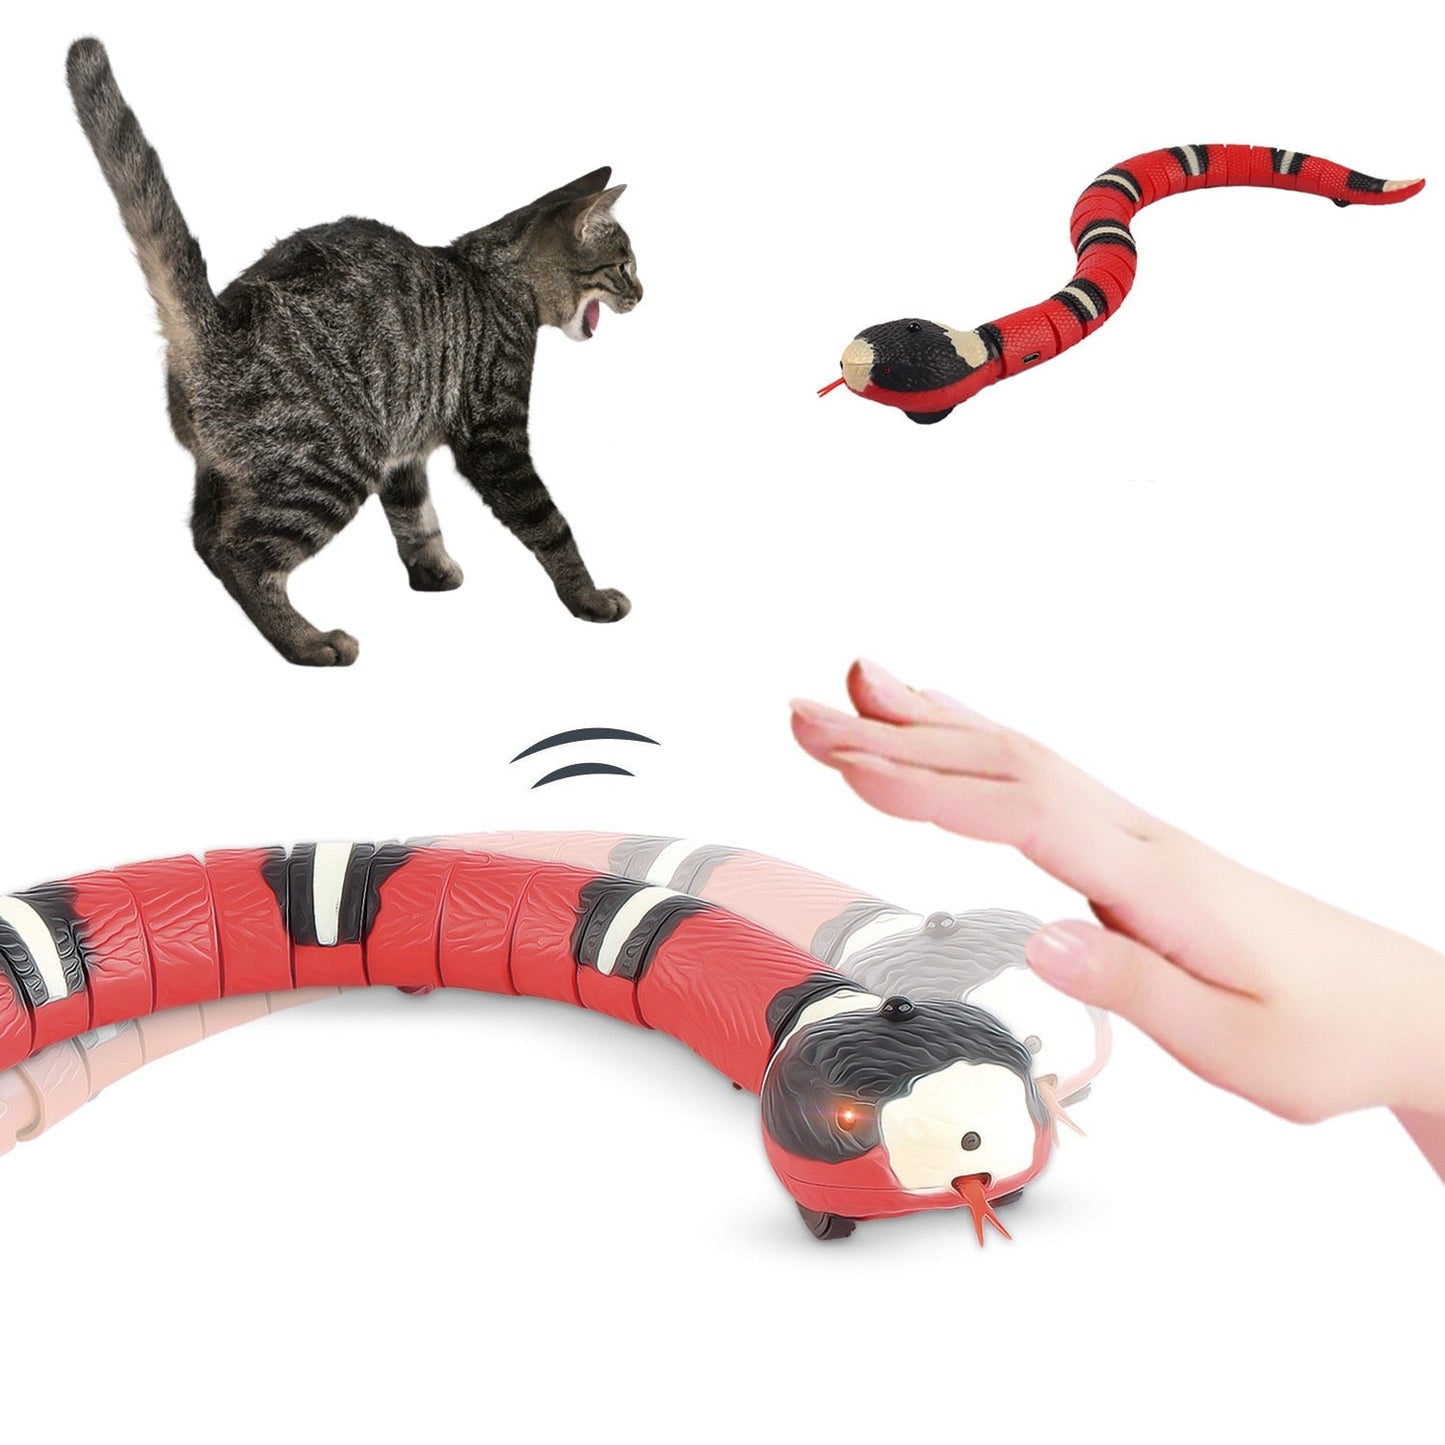 Interactief smart sensing USB oplaadbaar kattenspeelgoed - Levensechte Ratelslang sensatie! - Bivakshop